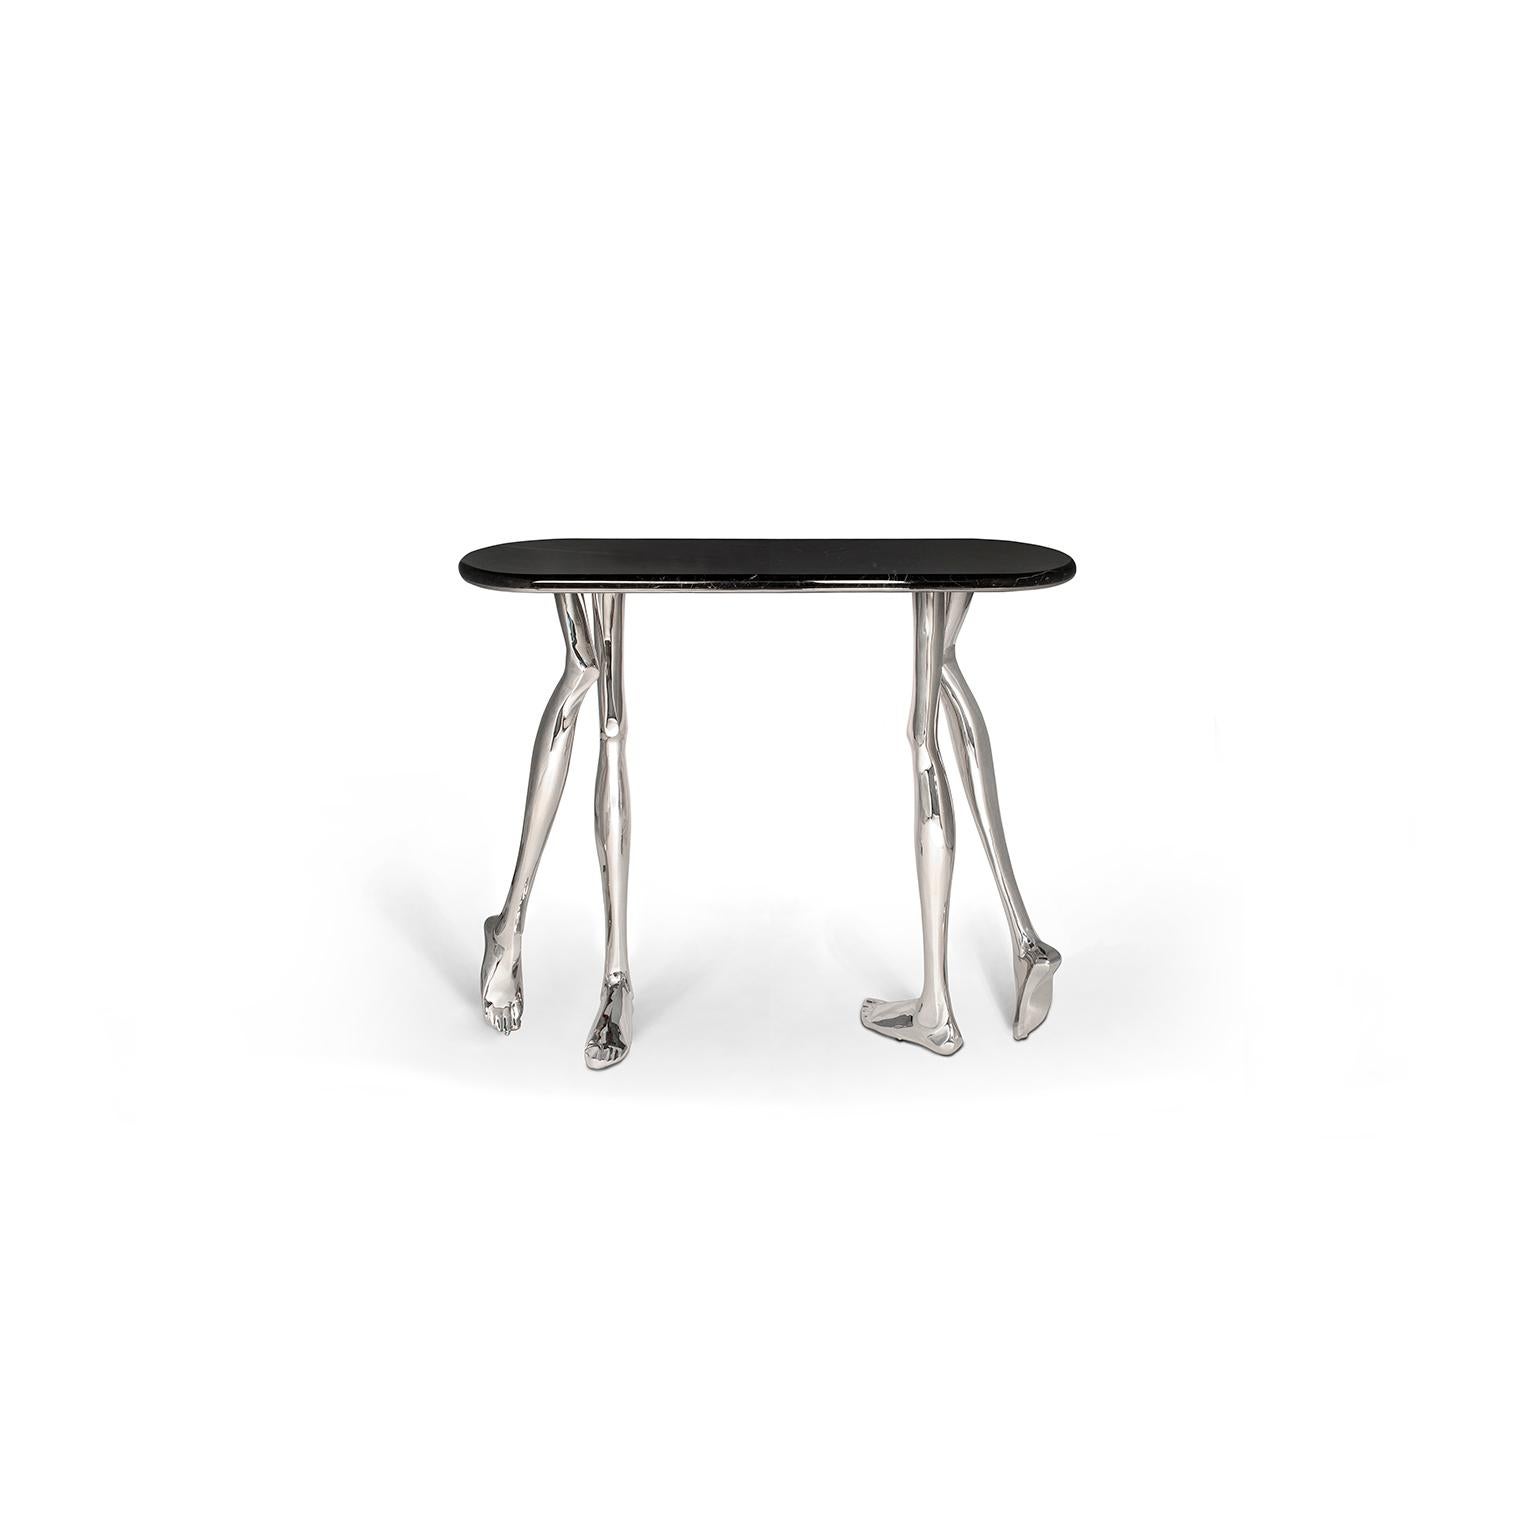 1. Vue d'ensemble
La table console Monroe est fabriquée en fonte de laiton poli et son plateau en marbre noir espagnol haut de gamme.
Il s'agit d'une étonnante pièce d'art sculpturale fabriquée à la main sur commande par des artisans portugais